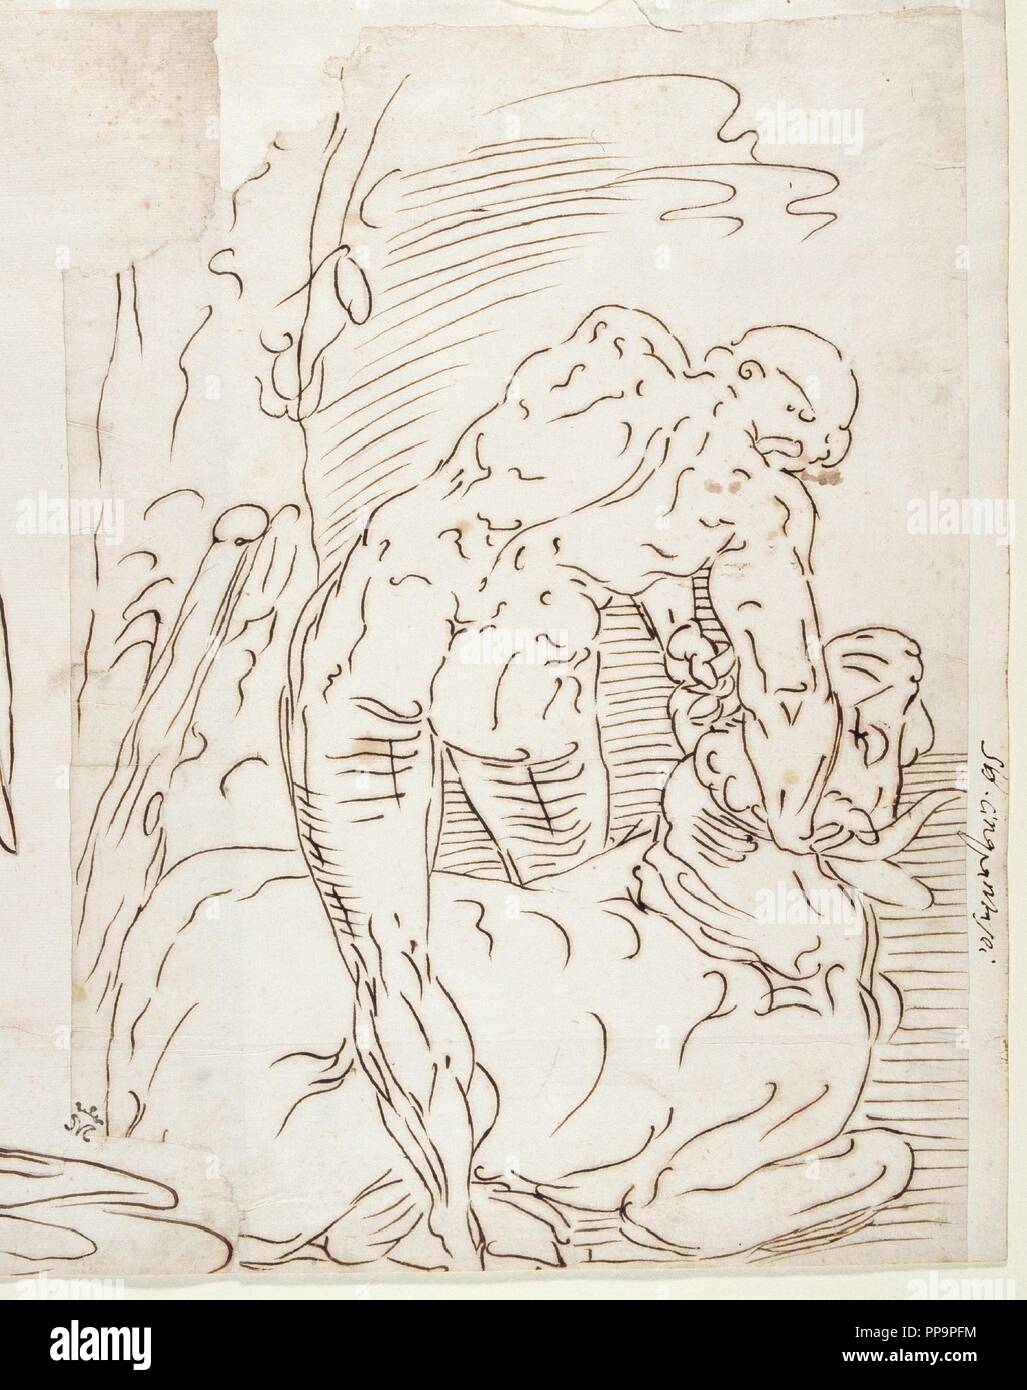 Anonyme / 'Hercules et le Minotaure". XVI siècle. Gris-brun crayon, encre sur papier. Musée : Musée du Prado, Madrid, España. Banque D'Images